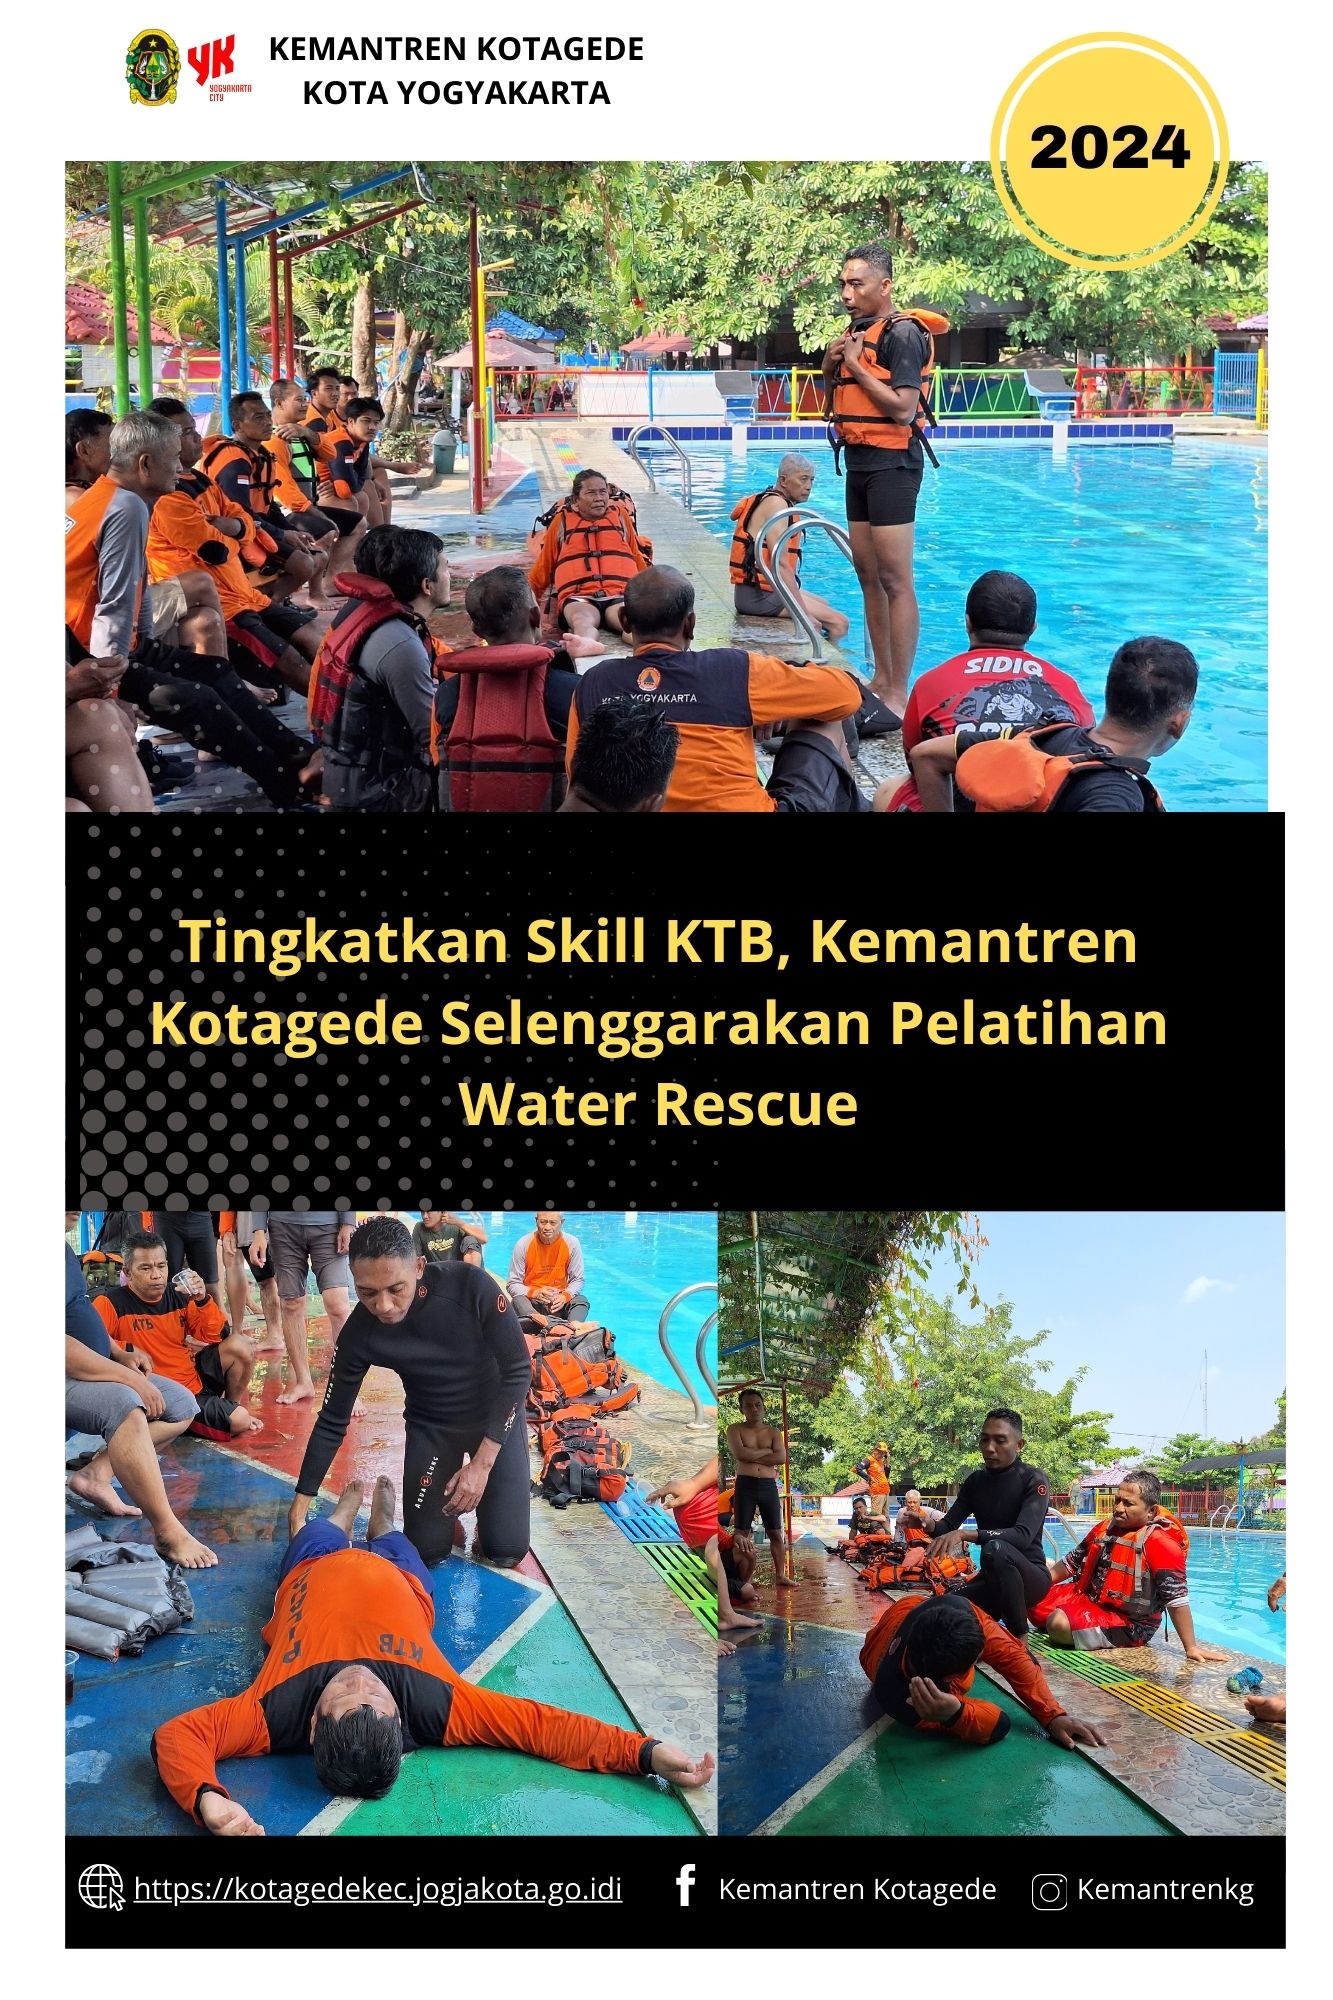 Tingkatkan Skill KTB, Kemantren Kotagede Selenggarakan Pelatihan Water Rescue